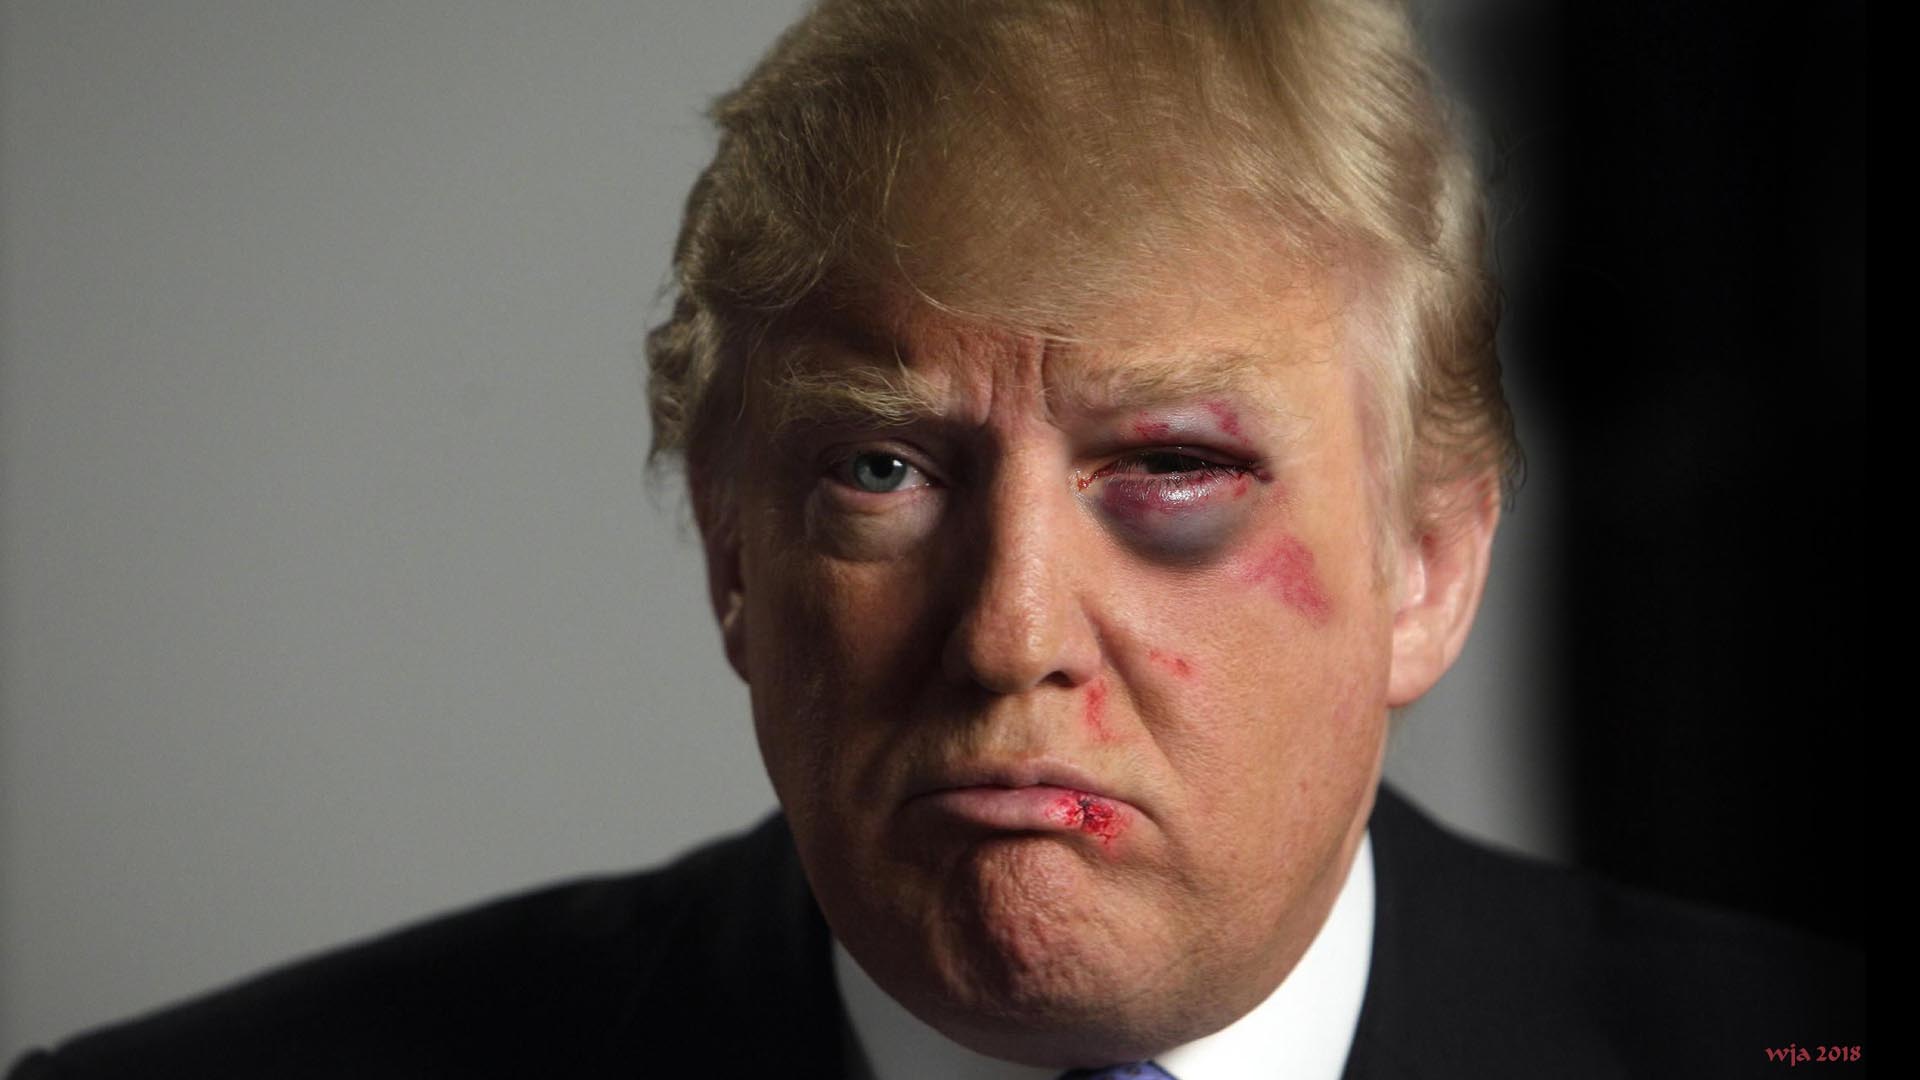 Trump-blackeye.jpg